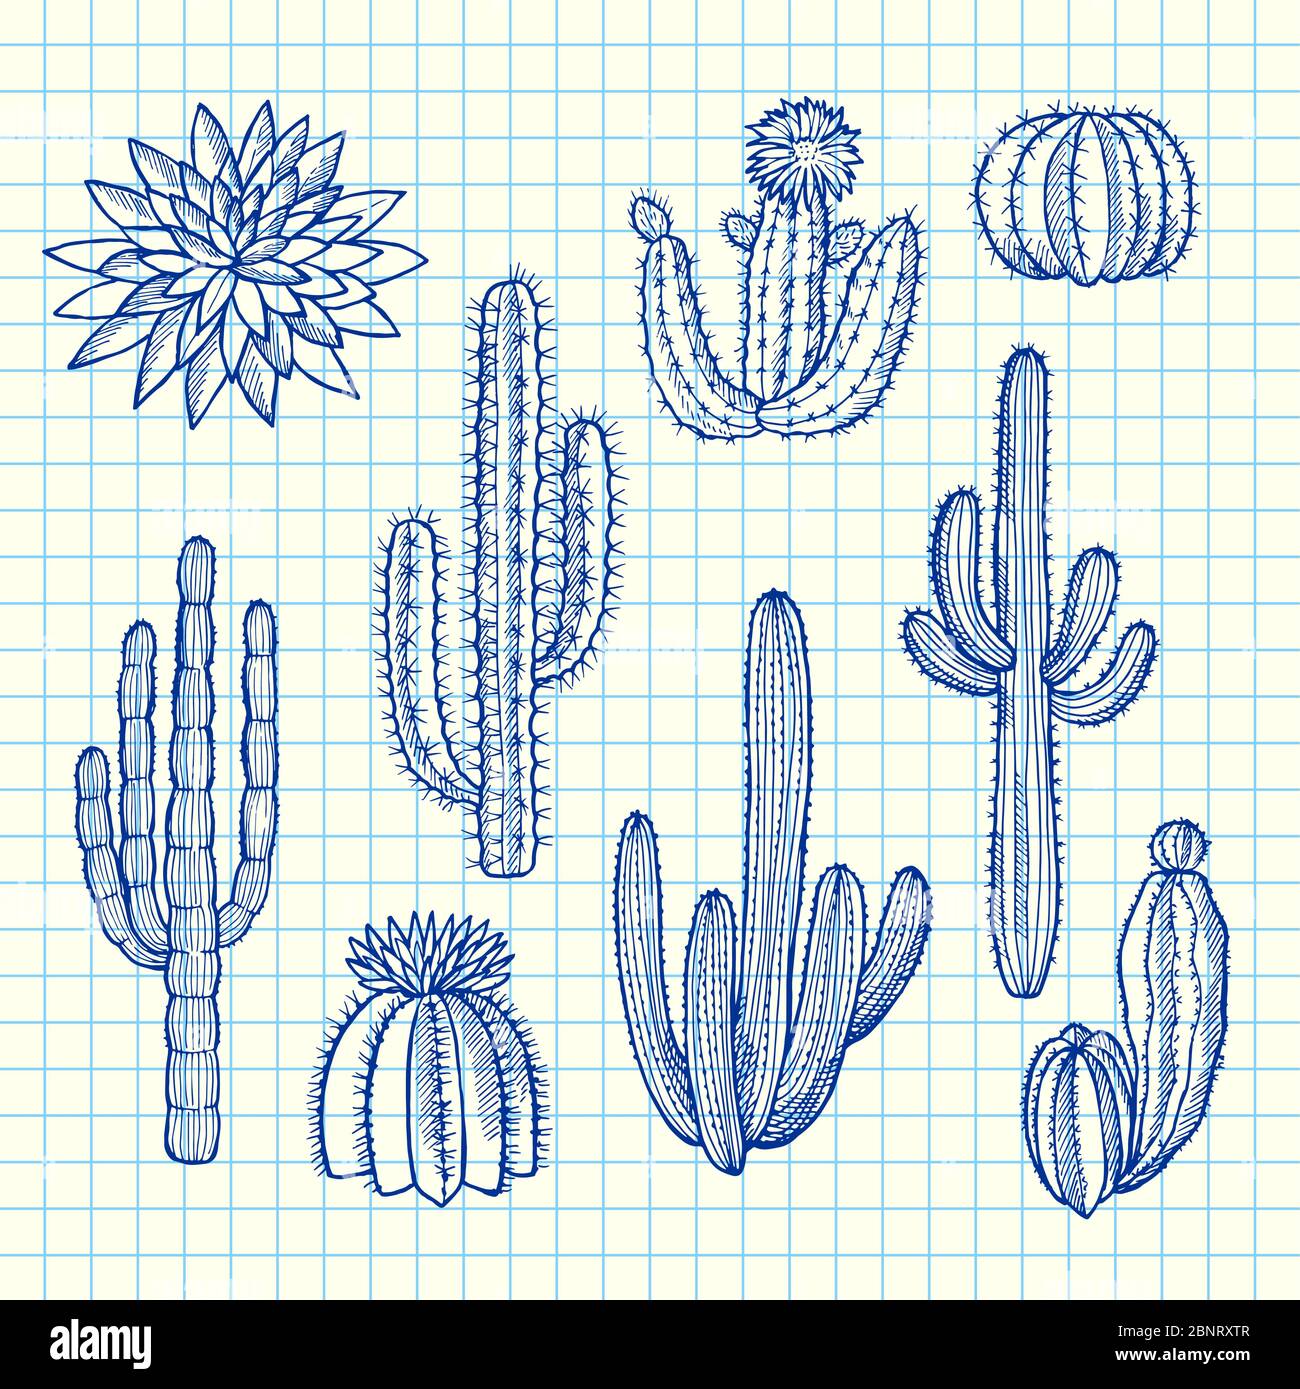 Illustration de fond de la feuille de cellules bleue représentant des plantes cactus sauvages dessinées à la main Illustration de Vecteur